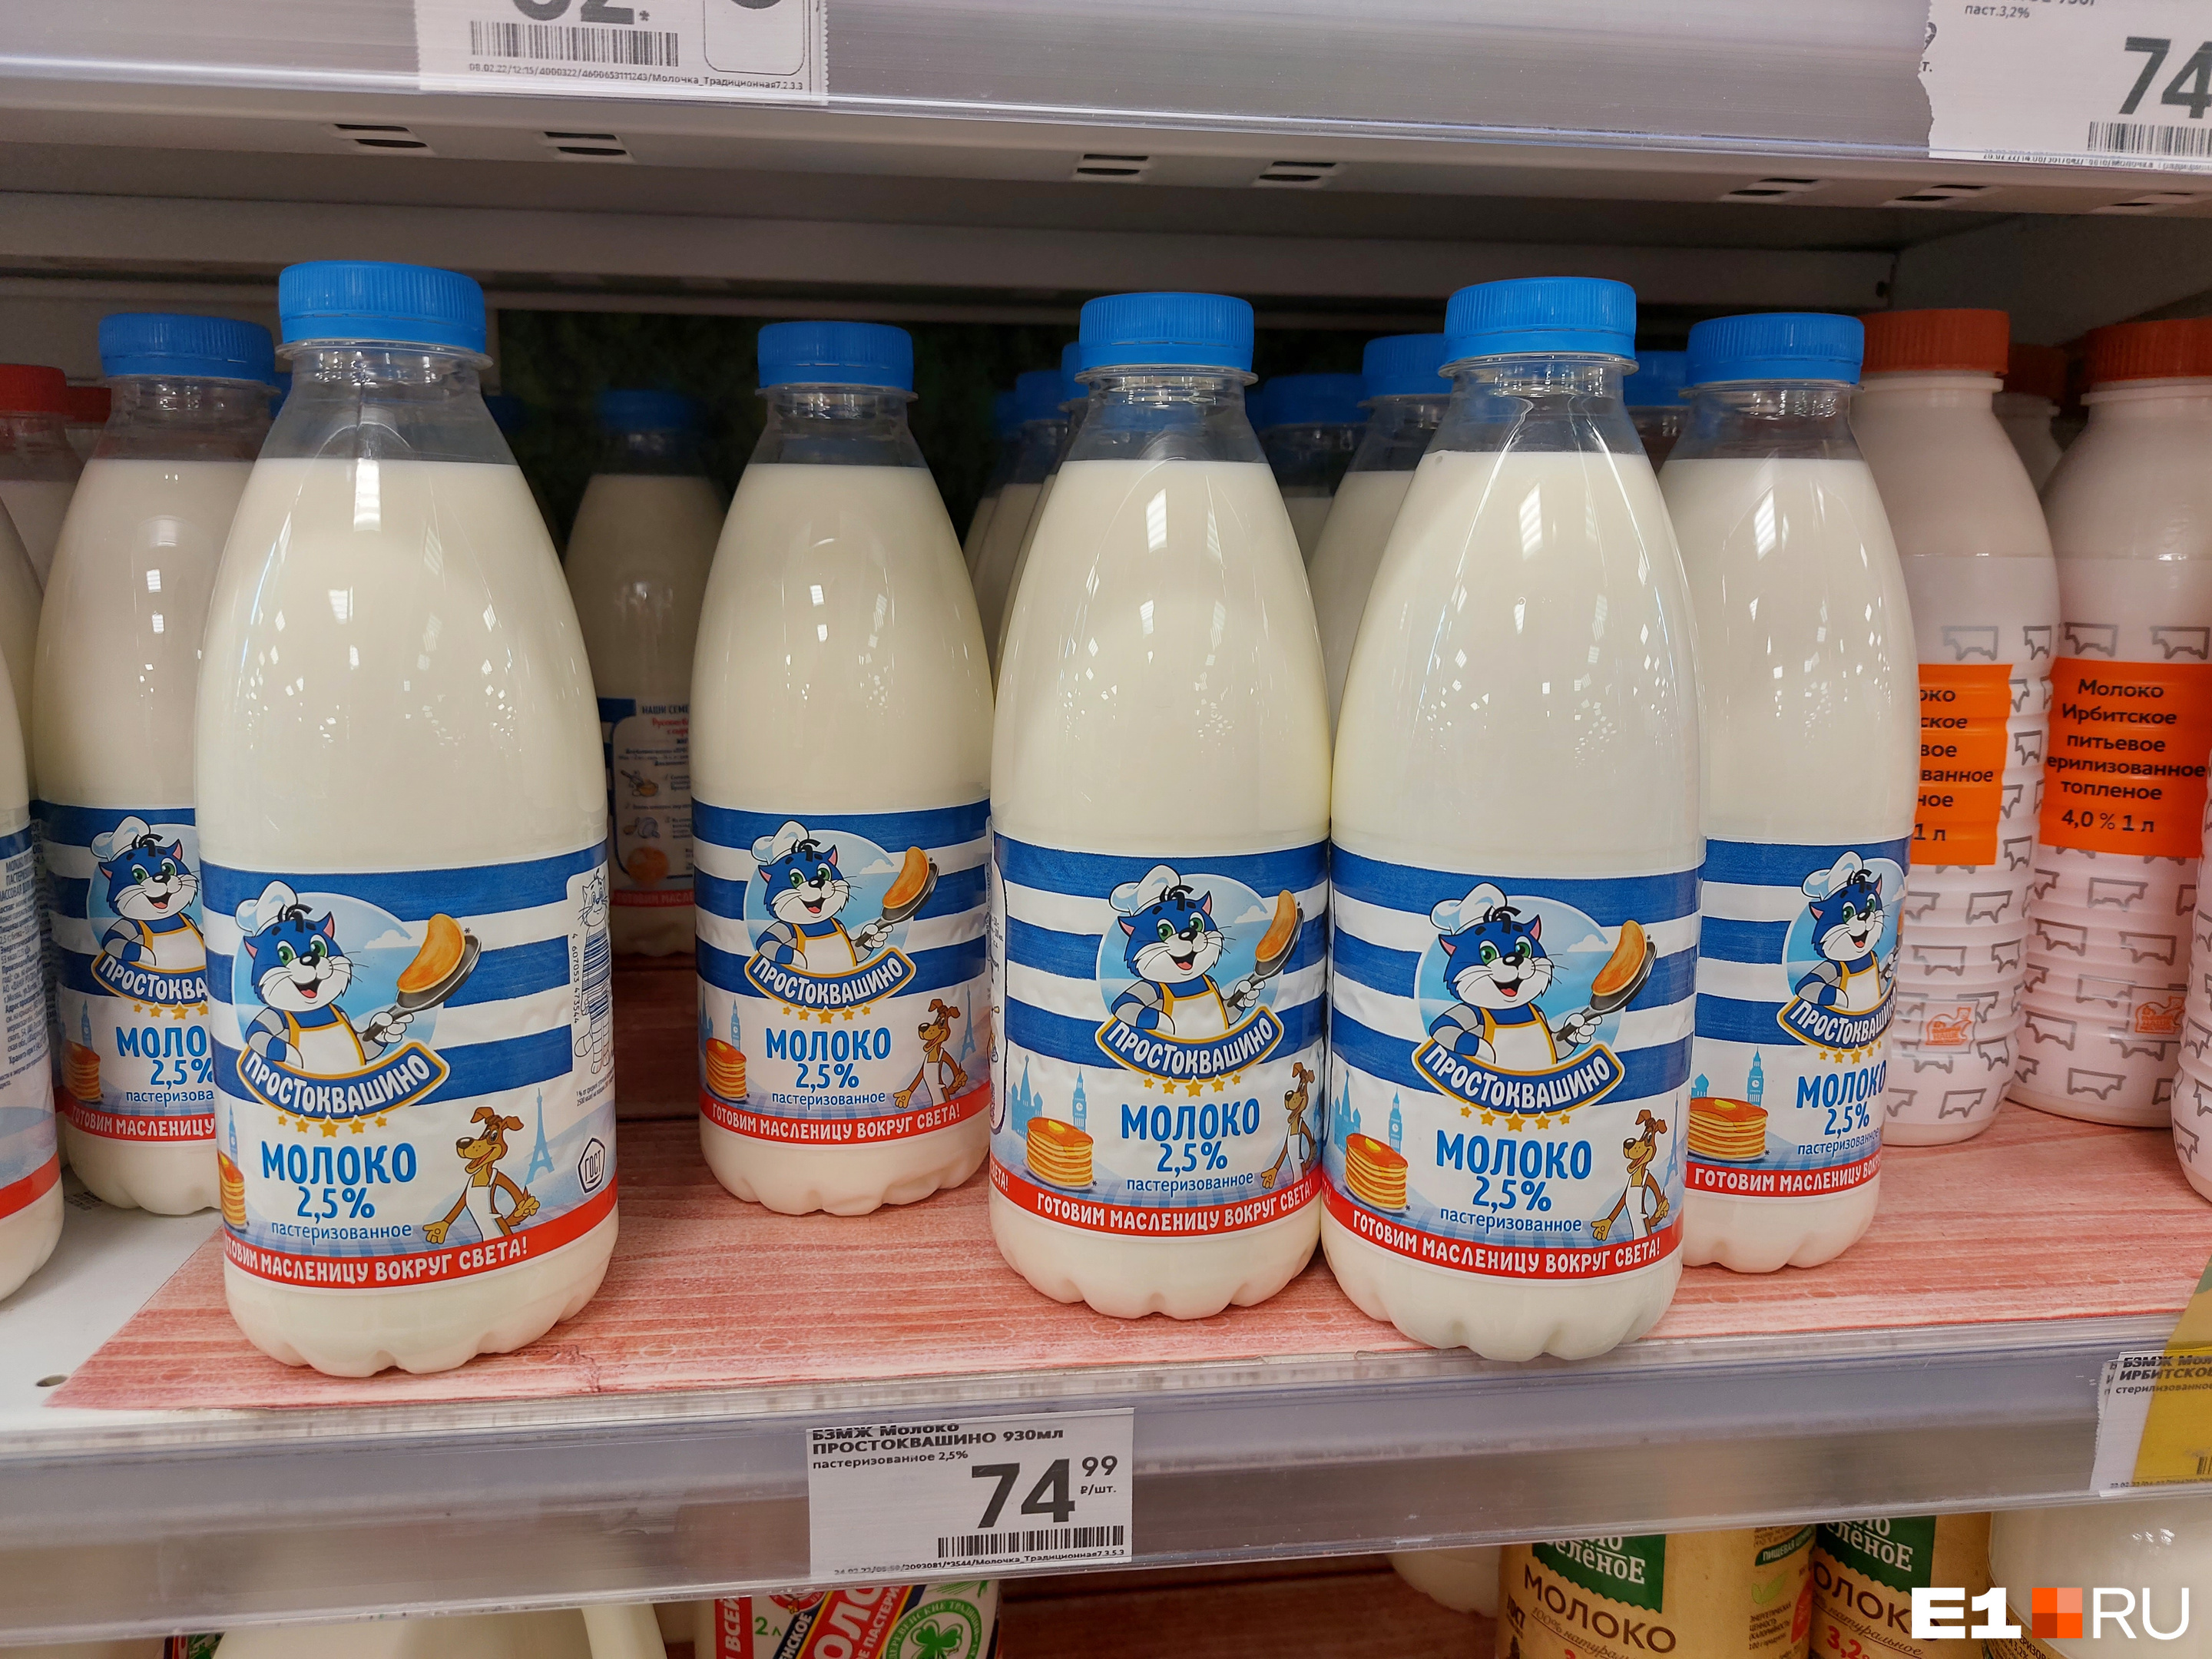 Таких цен на молоко сейчас не найти